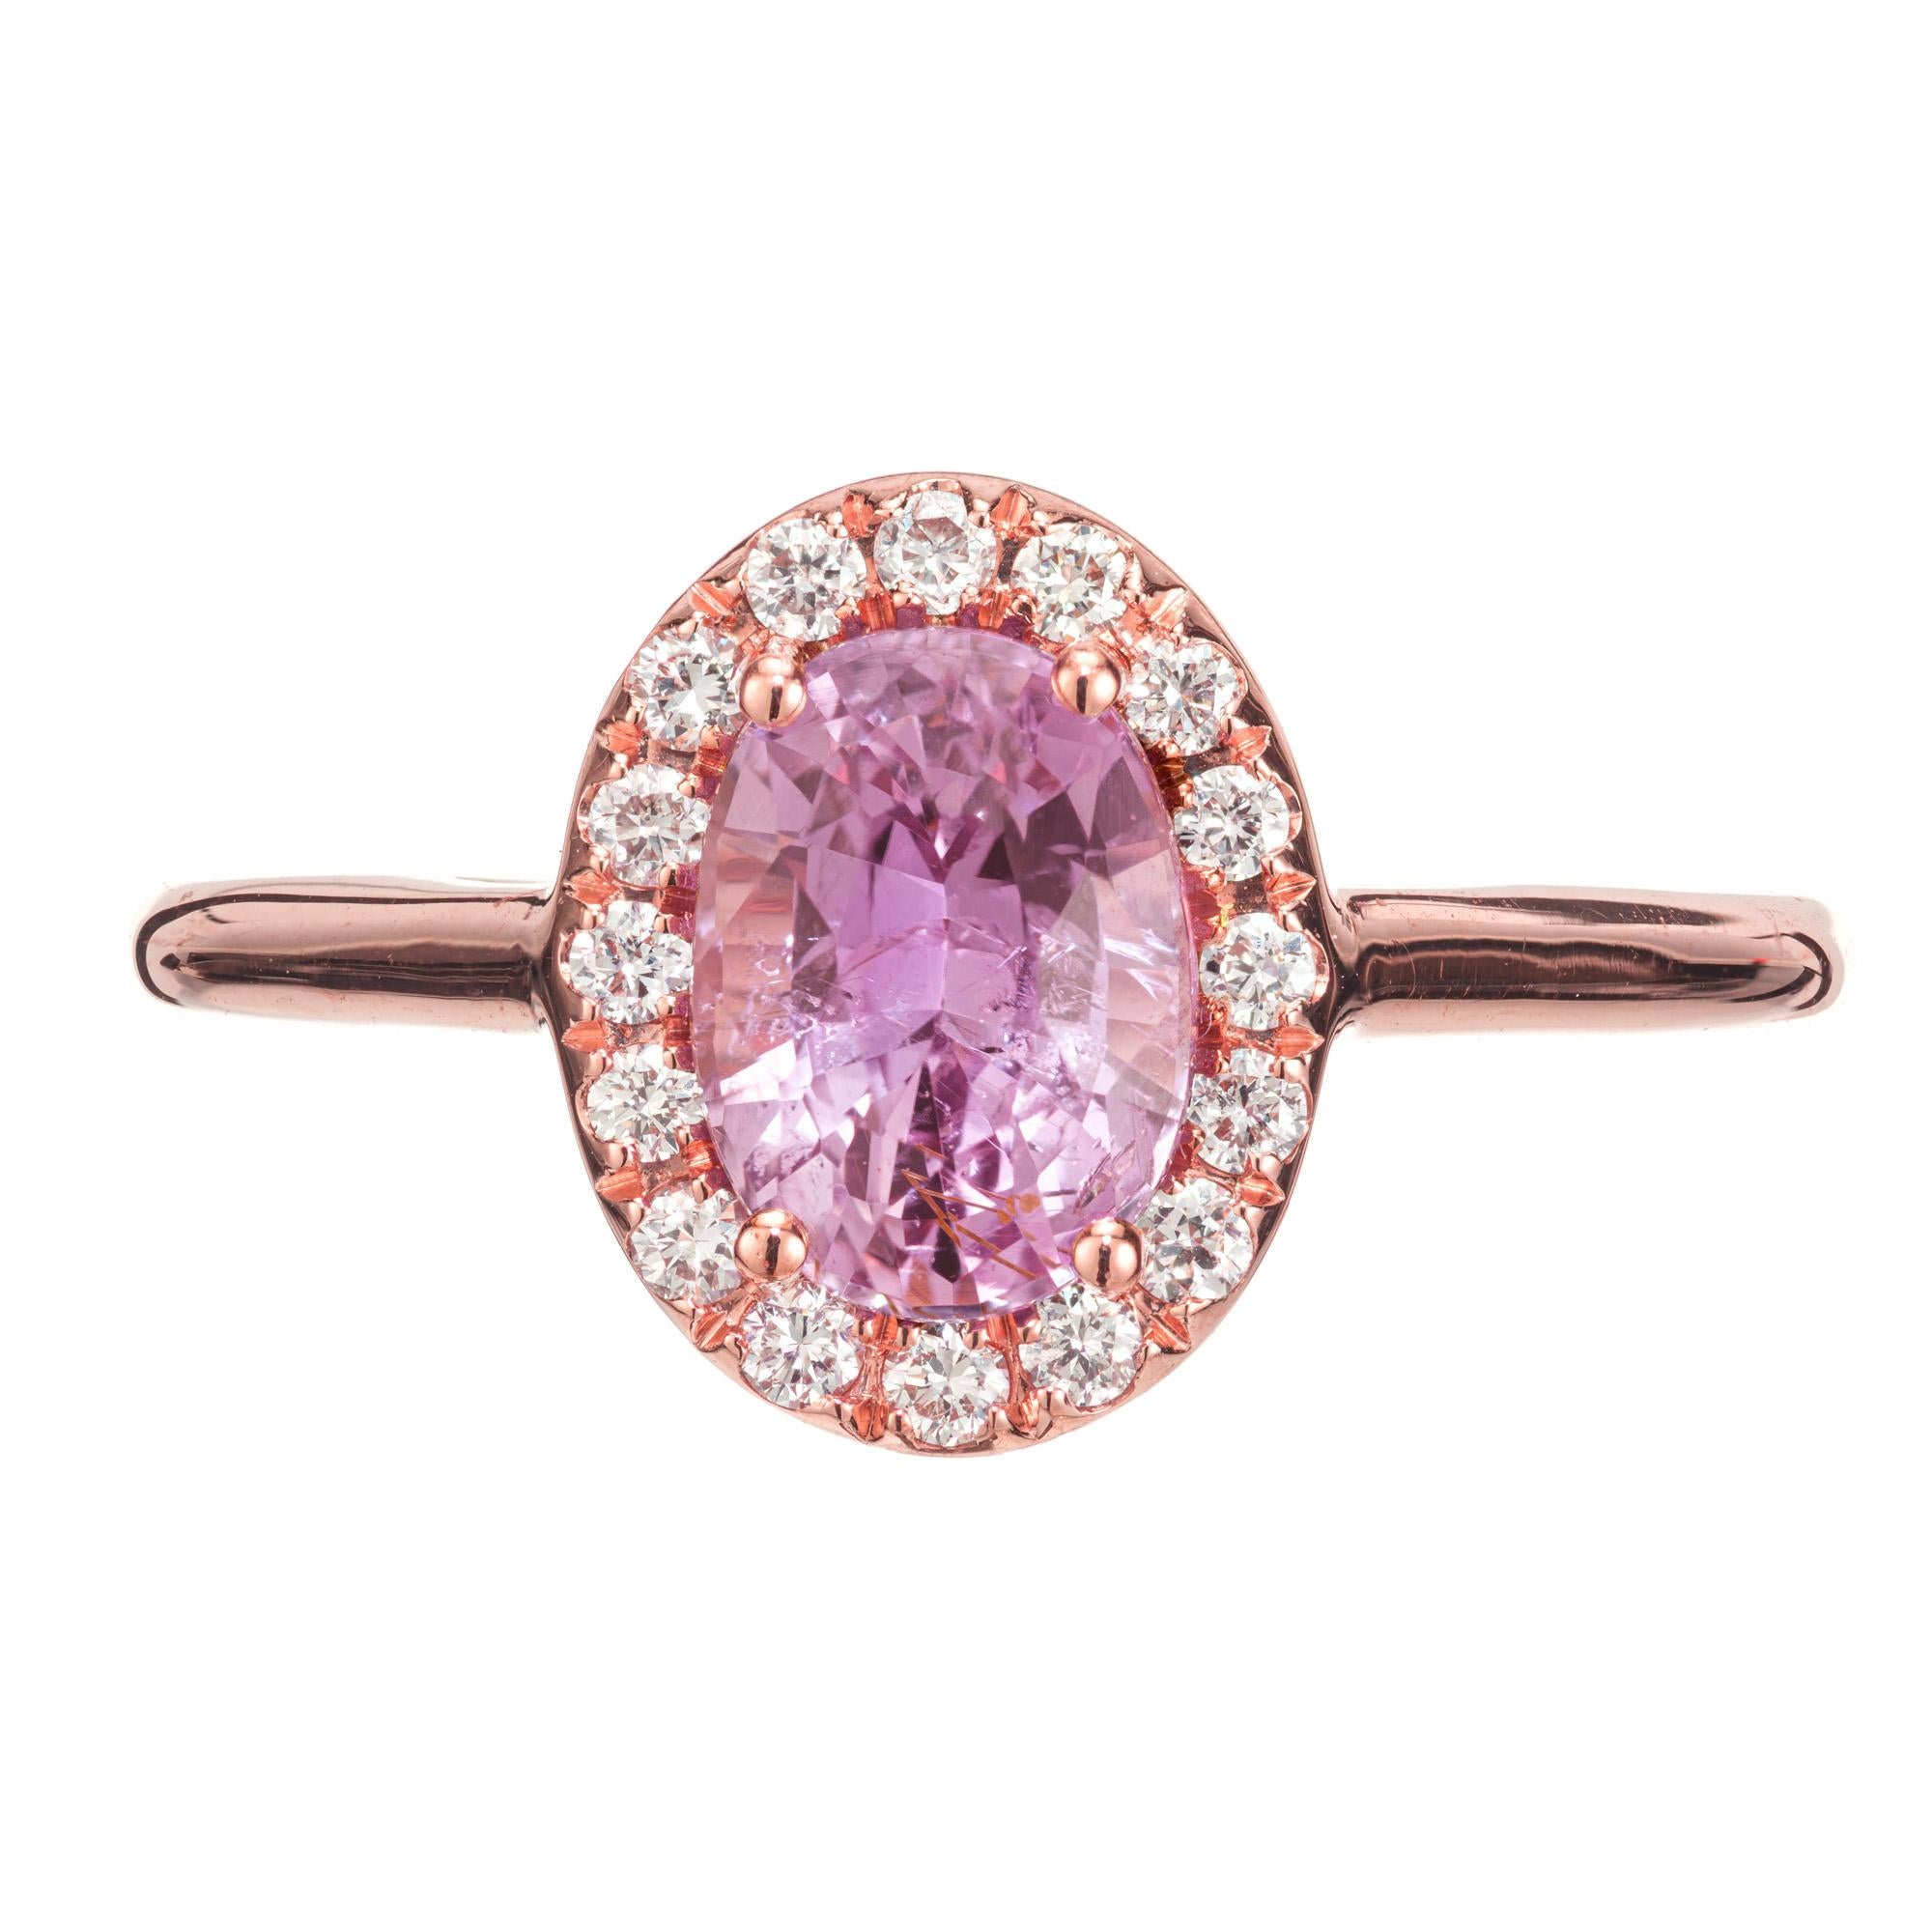 Verlobungsring mit rosa Saphiren und Diamanten. GIA-zertifizierter ovaler Saphir von 1,70 Karat in einer Fassung aus 14 Karat Roségold mit einem Halo aus 16 runden Diamanten im Brillantschliff. Entworfen und hergestellt in der Werkstatt von Peter